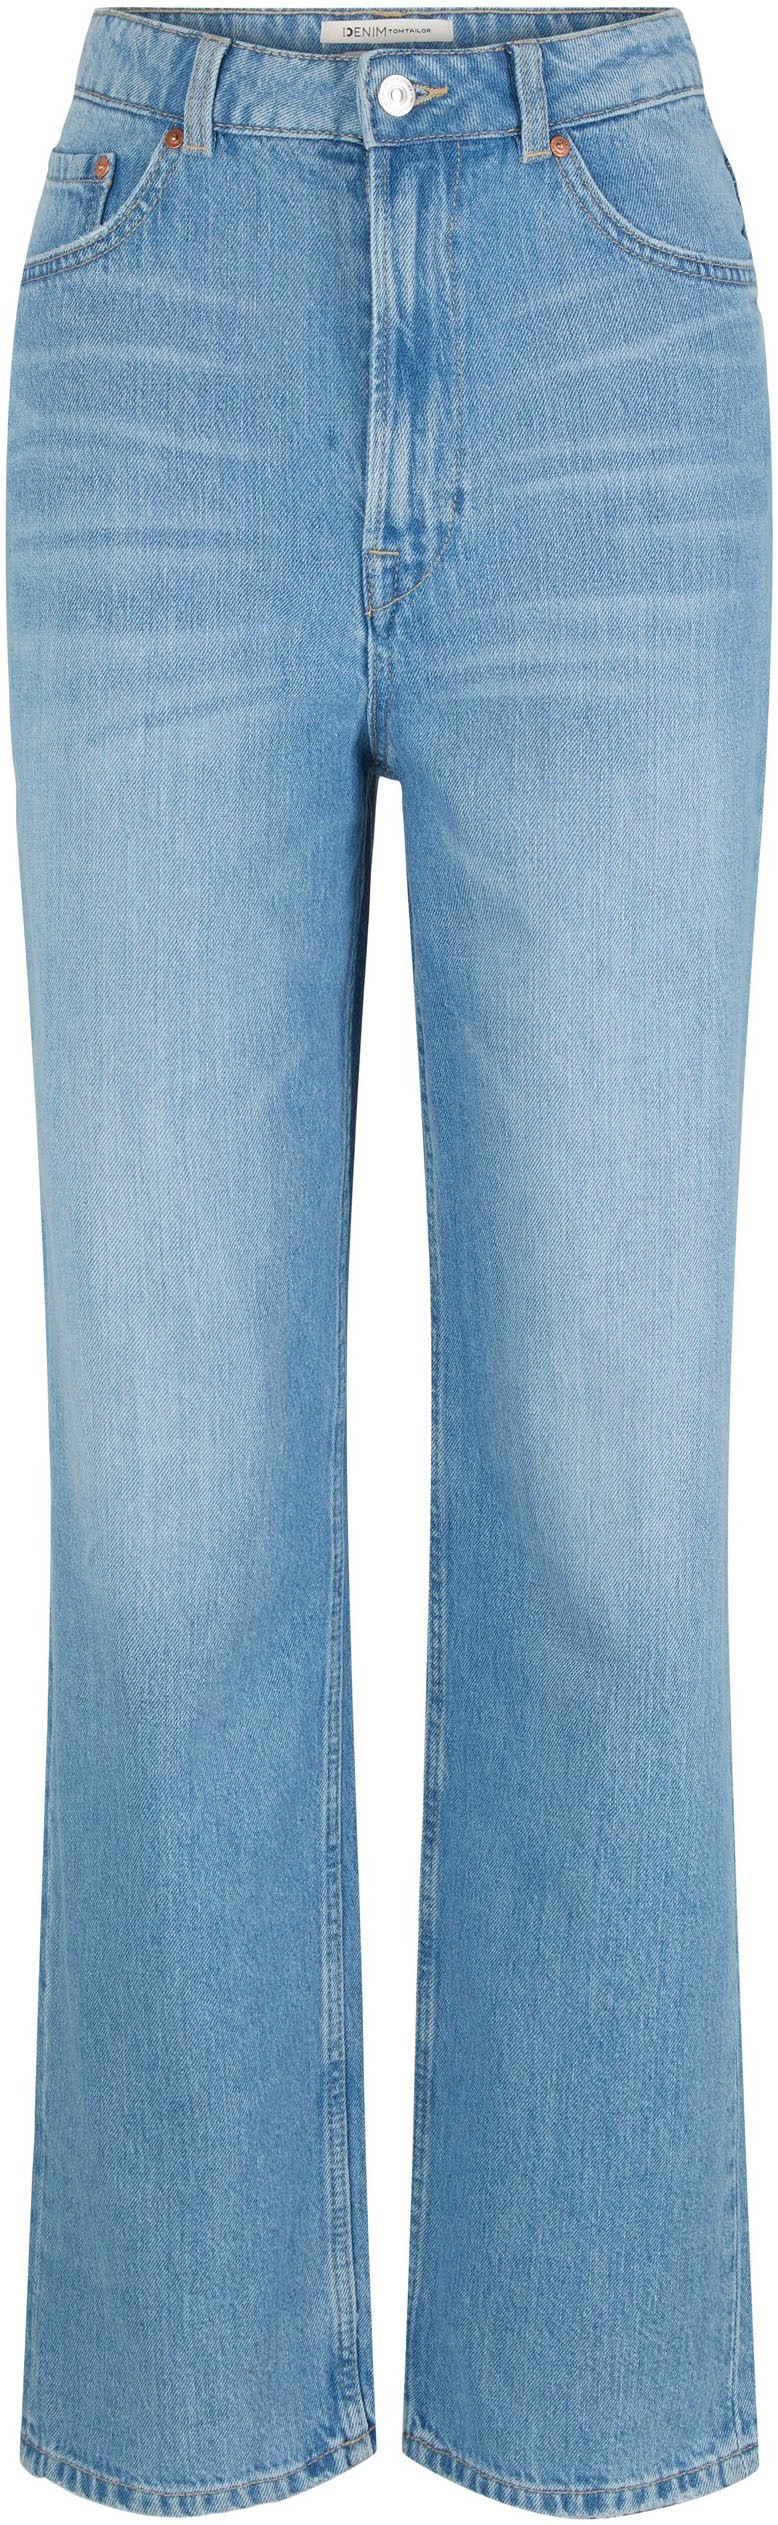 TOM TAILOR Denim 5-Pocket-Jeans OTTO bestellen bei